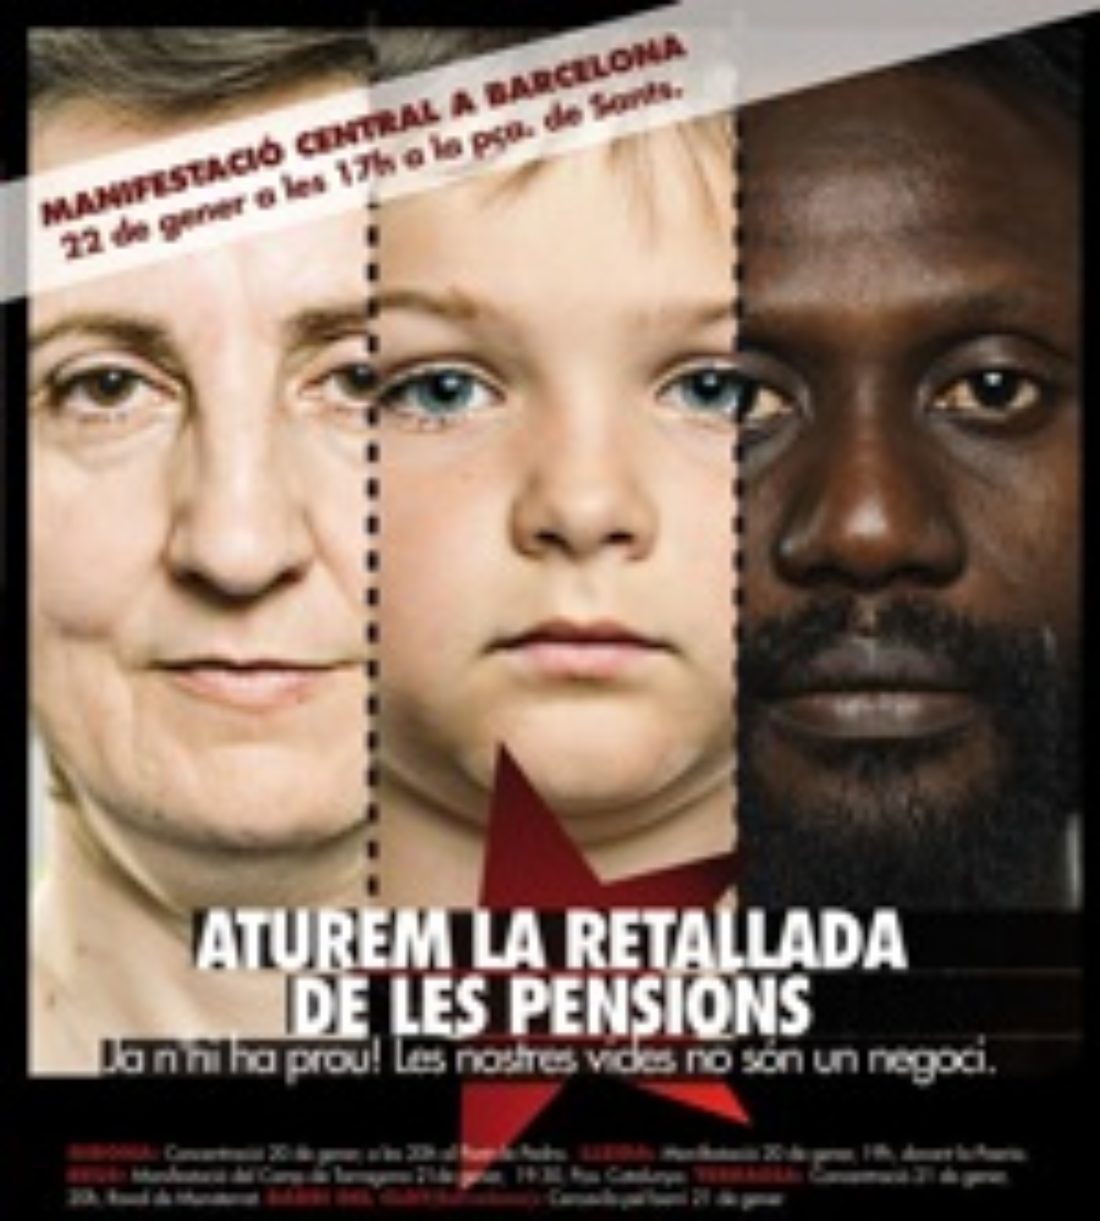 21 enero, Reus : Manifestación contra el recorte de las pensiones